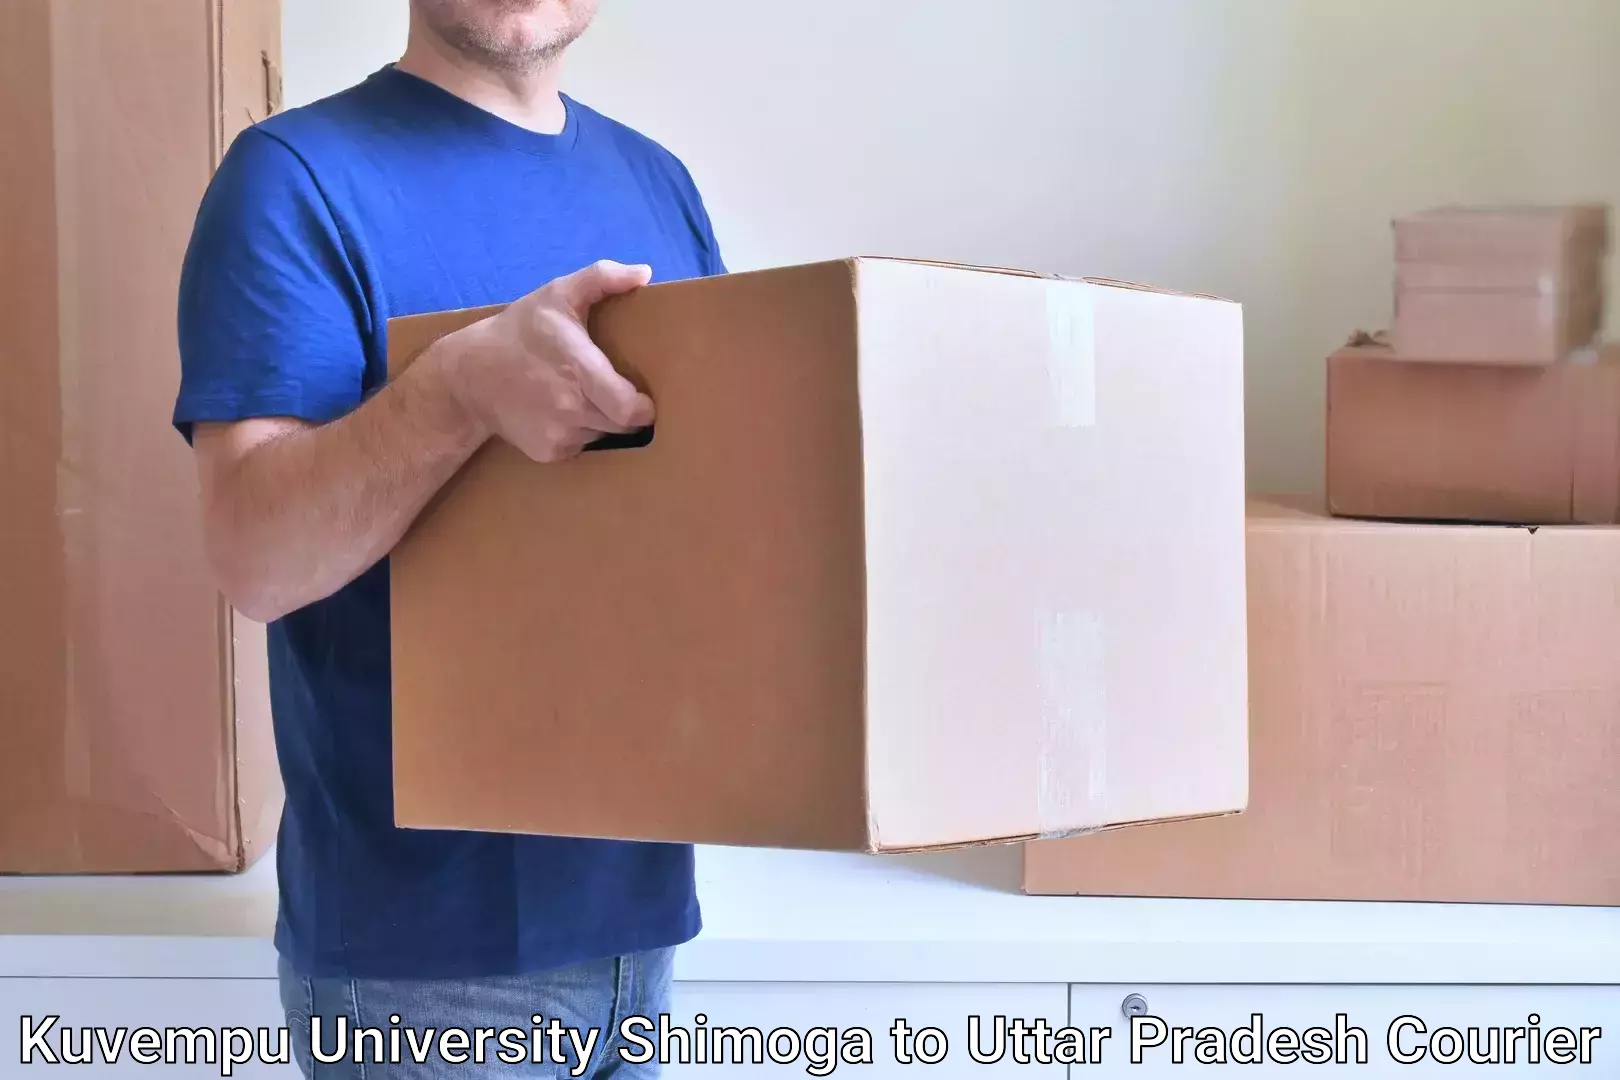 Cargo courier service Kuvempu University Shimoga to Martinganj